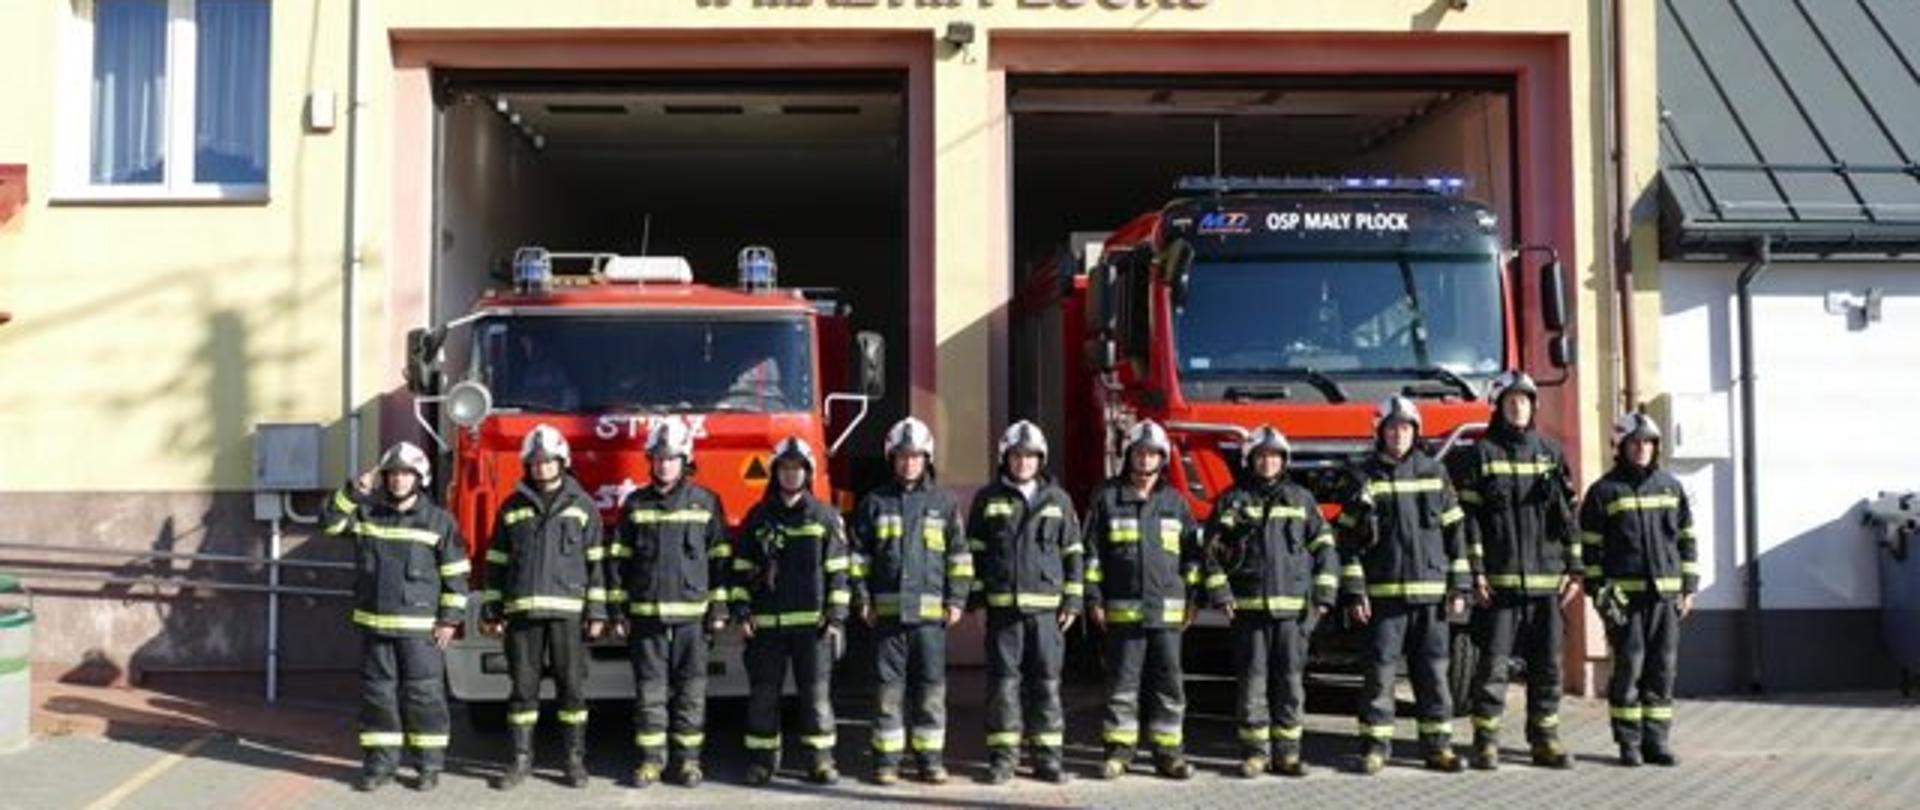 Strażacy OSP składają hołd przed remizą OSP dla zmarłego tragicznie strażaka